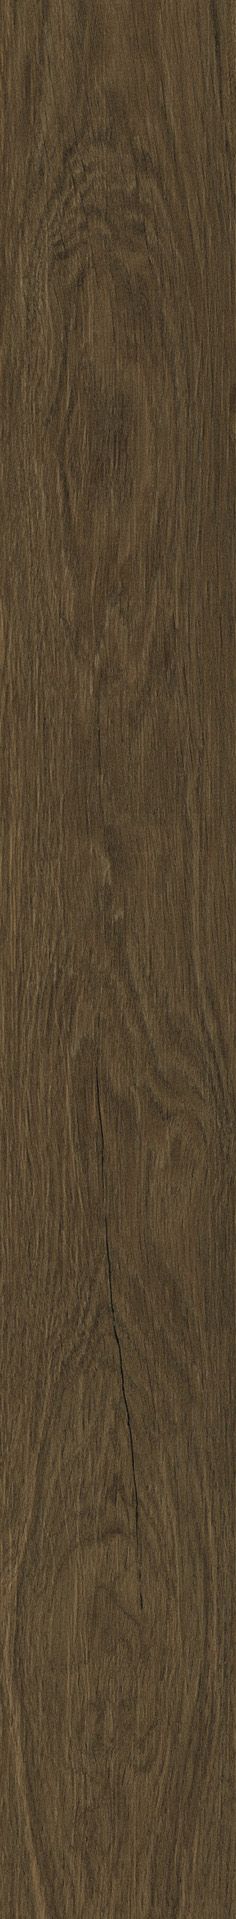 Плитка из керамогранита матовая Italon Лофт 20x160 коричневый (610010001641) плитка из керамогранита матовая italon лофт 20x160 бежевый 610010001627